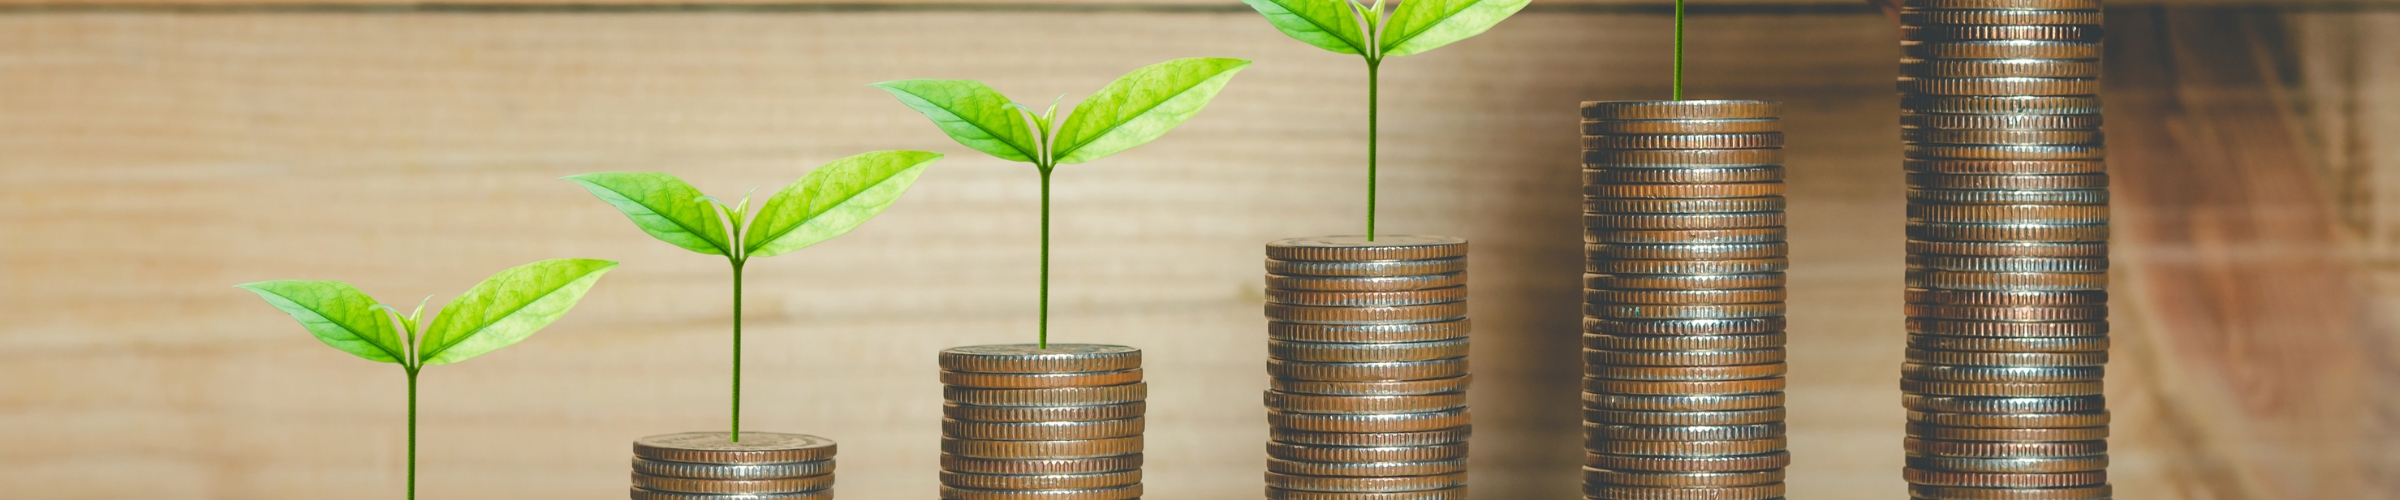 Fonds ESG - Intégrez vos valeurs dans vos décisions d'investissement 2